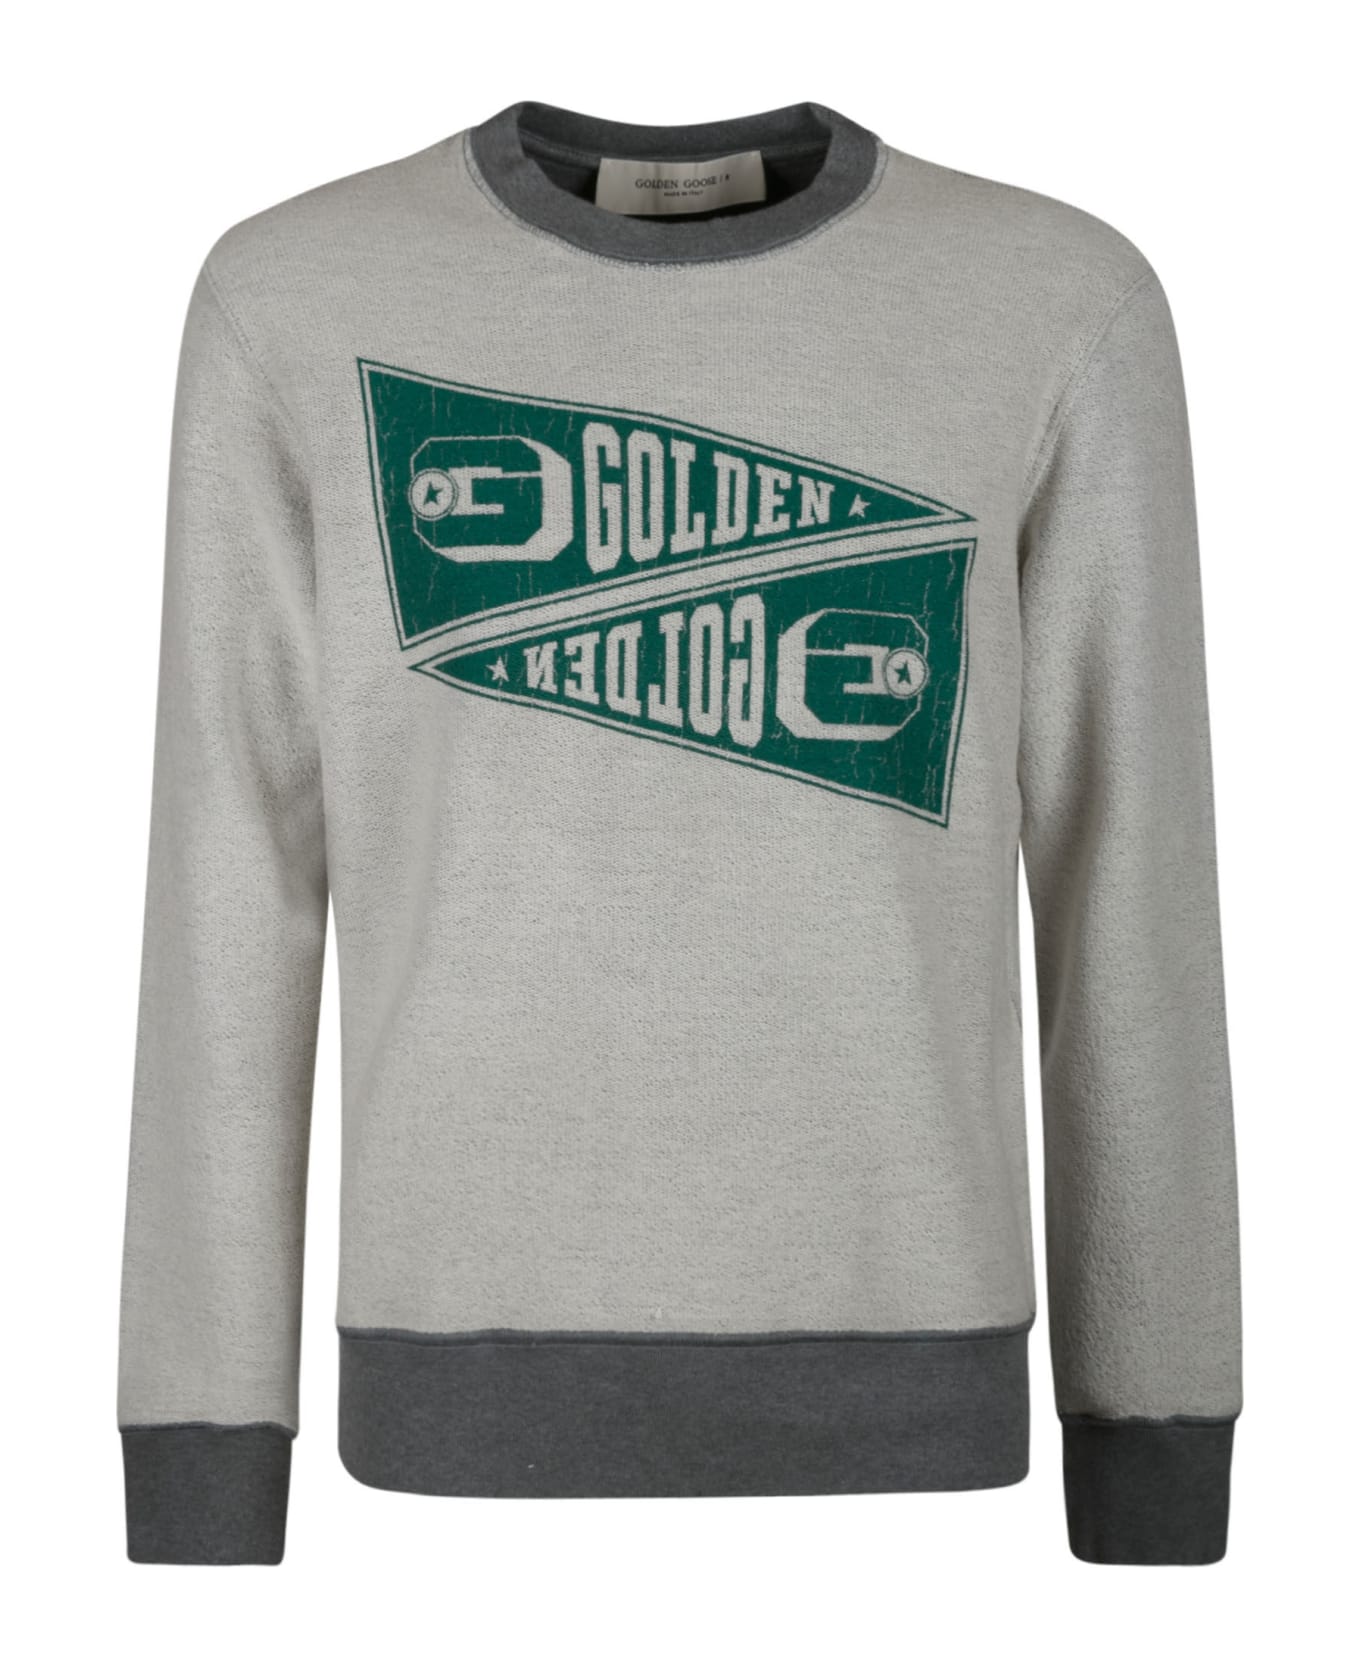 Golden Goose Archibald Sweatshirt - Grey Mélange/Green